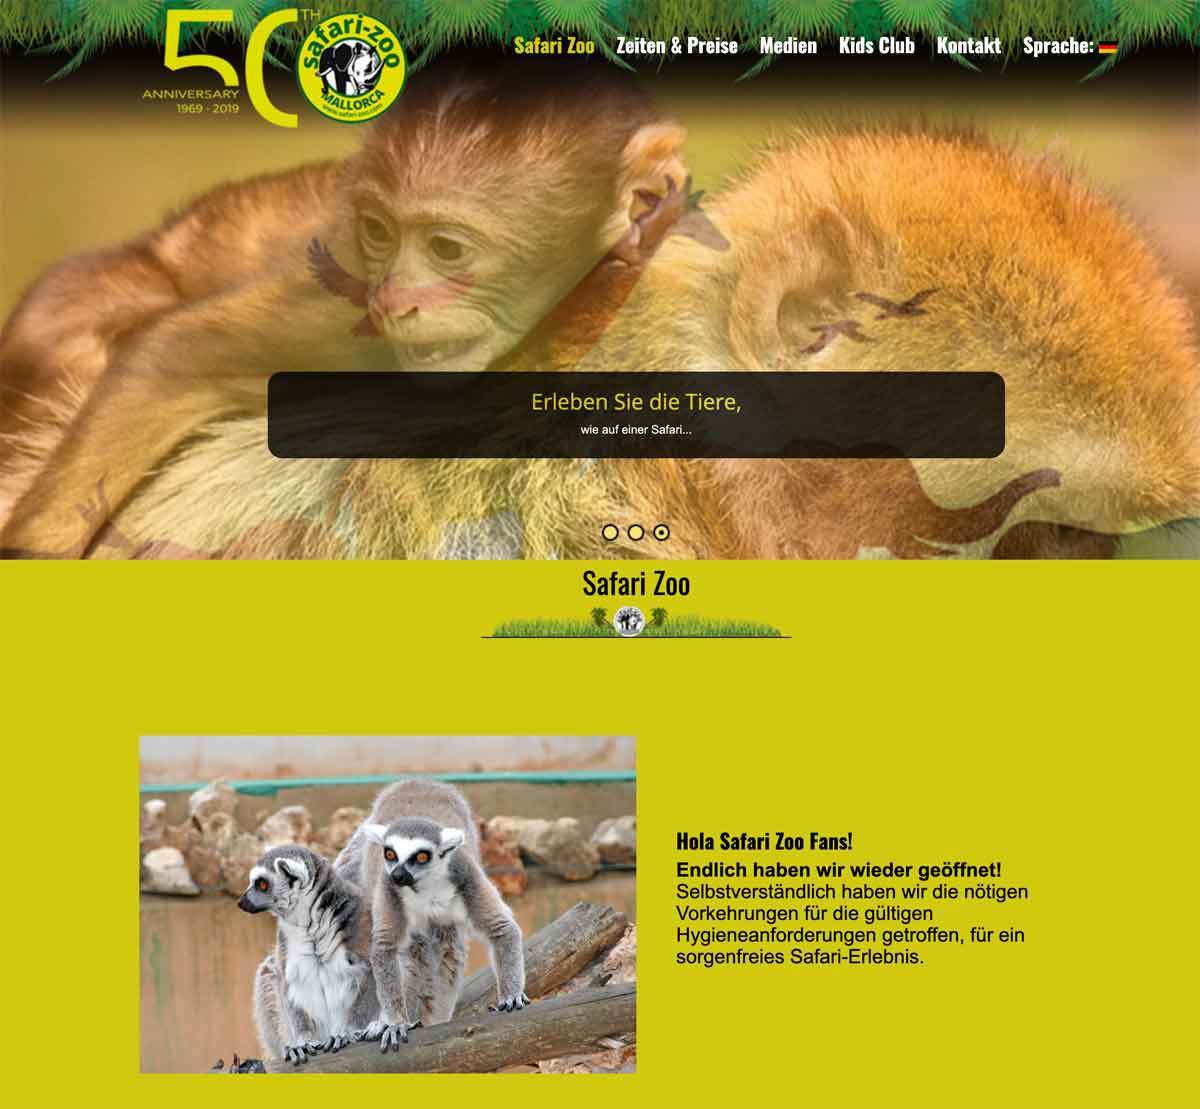 screenshot von der Internetseite des Safari Zoo auf Mallorca